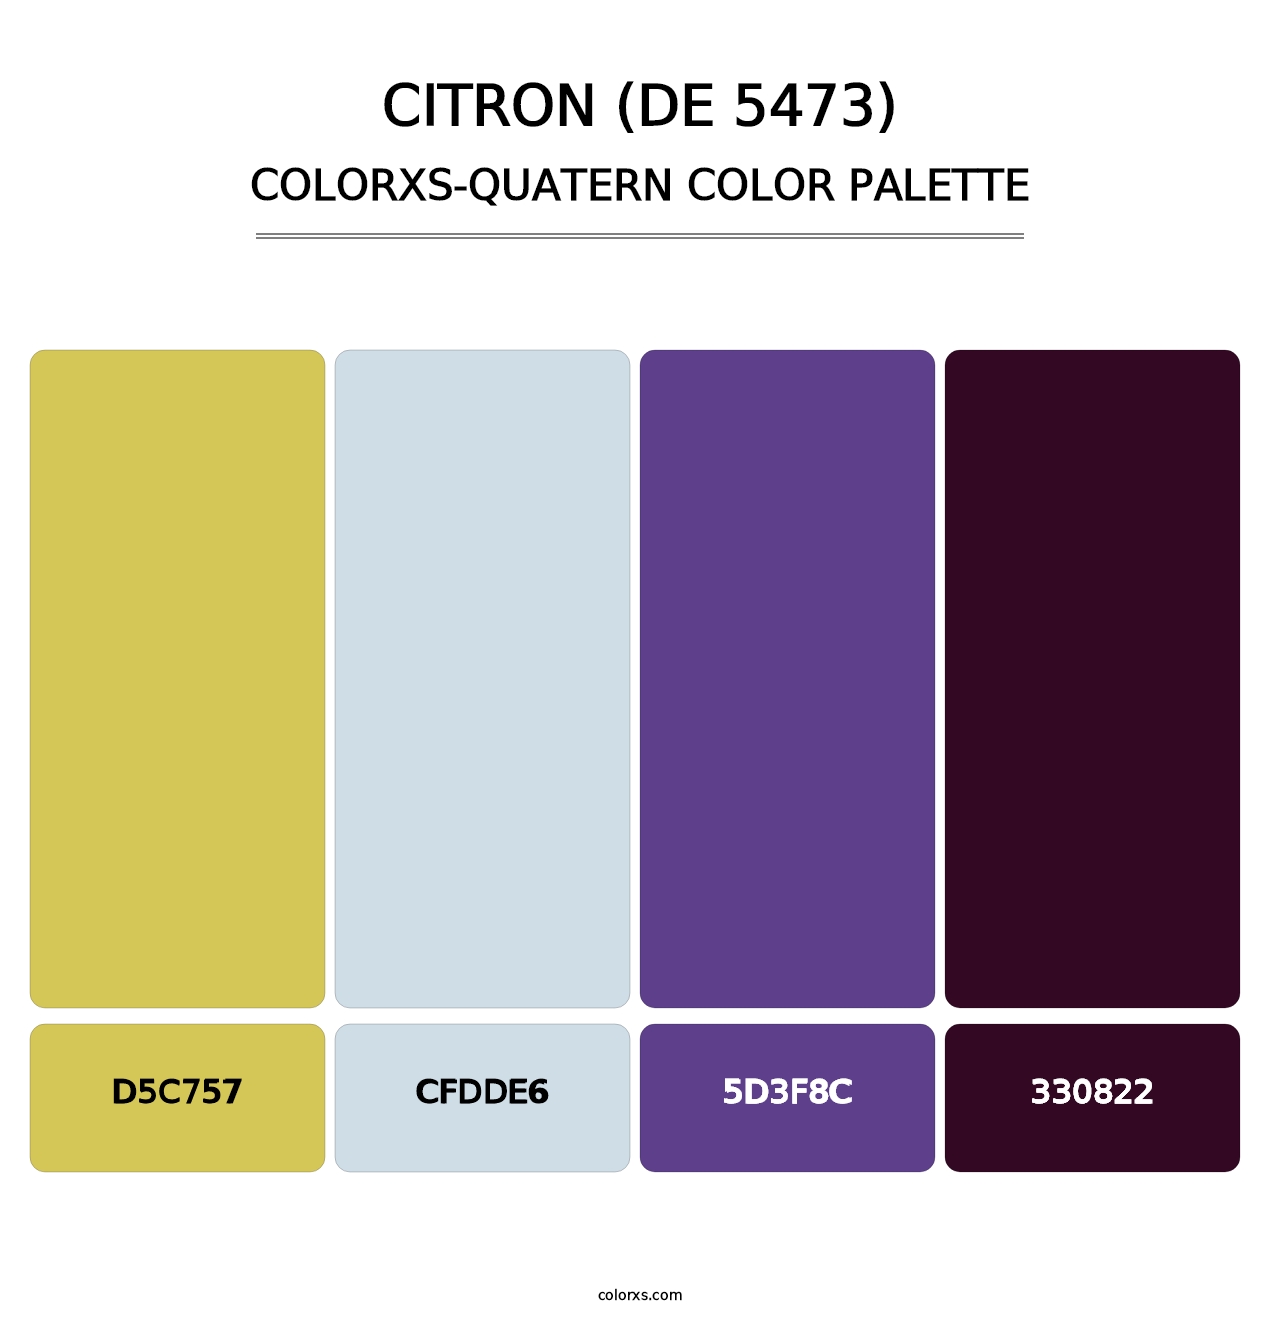 Citron (DE 5473) - Colorxs Quatern Palette